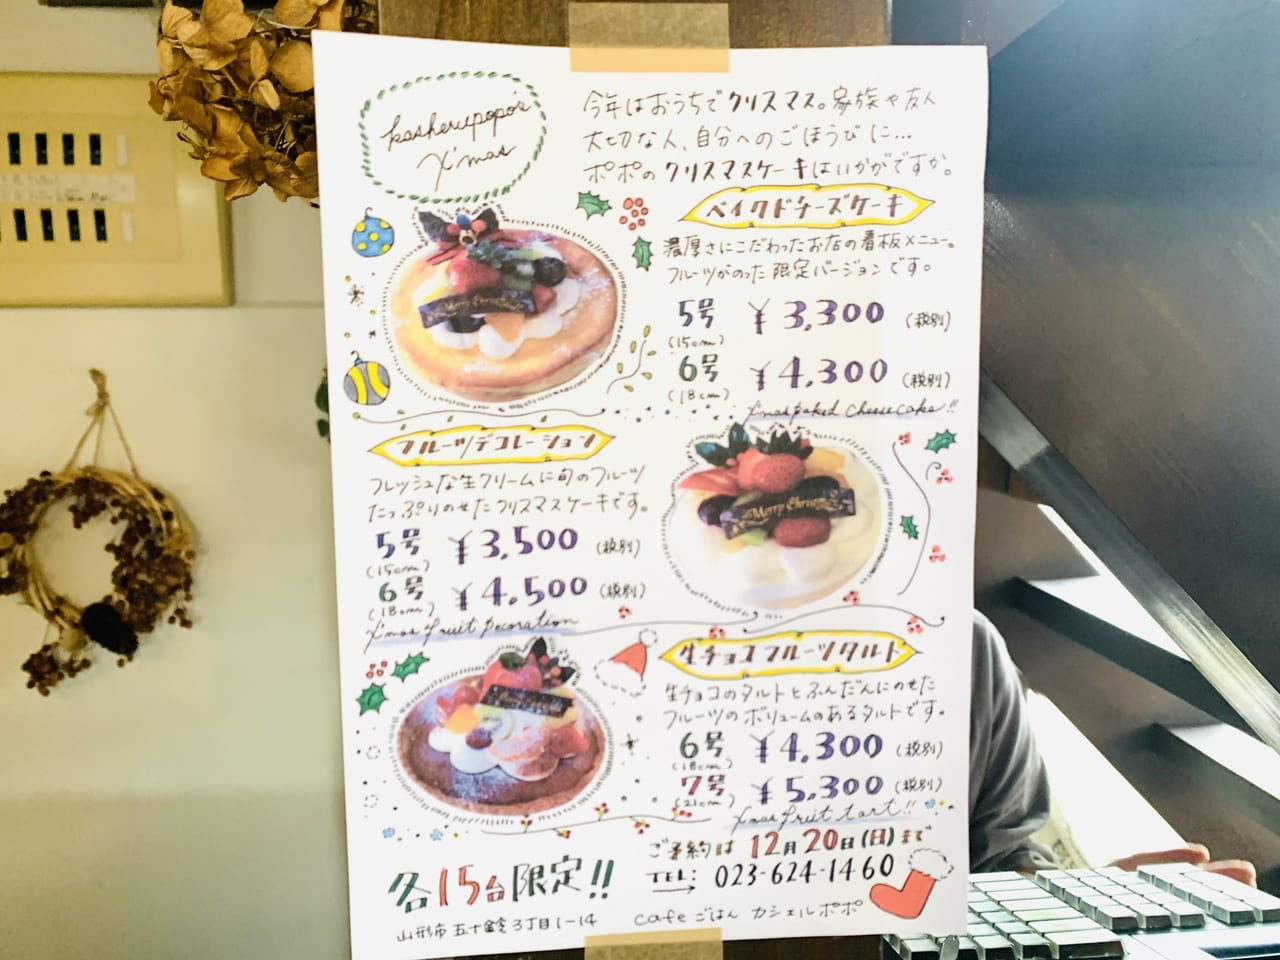 山形市 Cafeごはんカシェルポポにて 3種類のクリスマスケーキのご予約を受付中 号外net 山形市